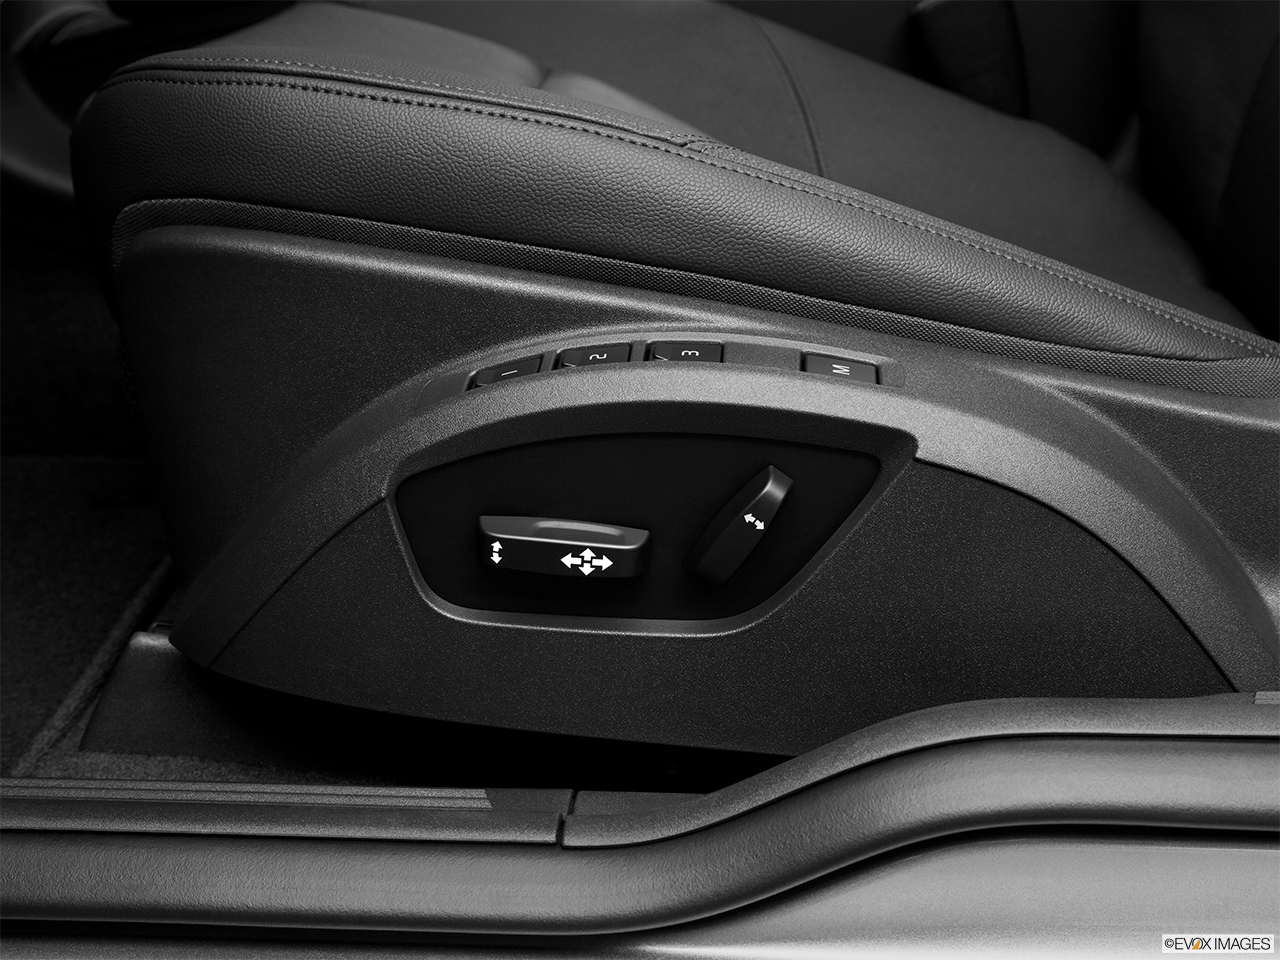 2013 Volvo C30 T5 Premier Plus Seat Adjustment Controllers. 